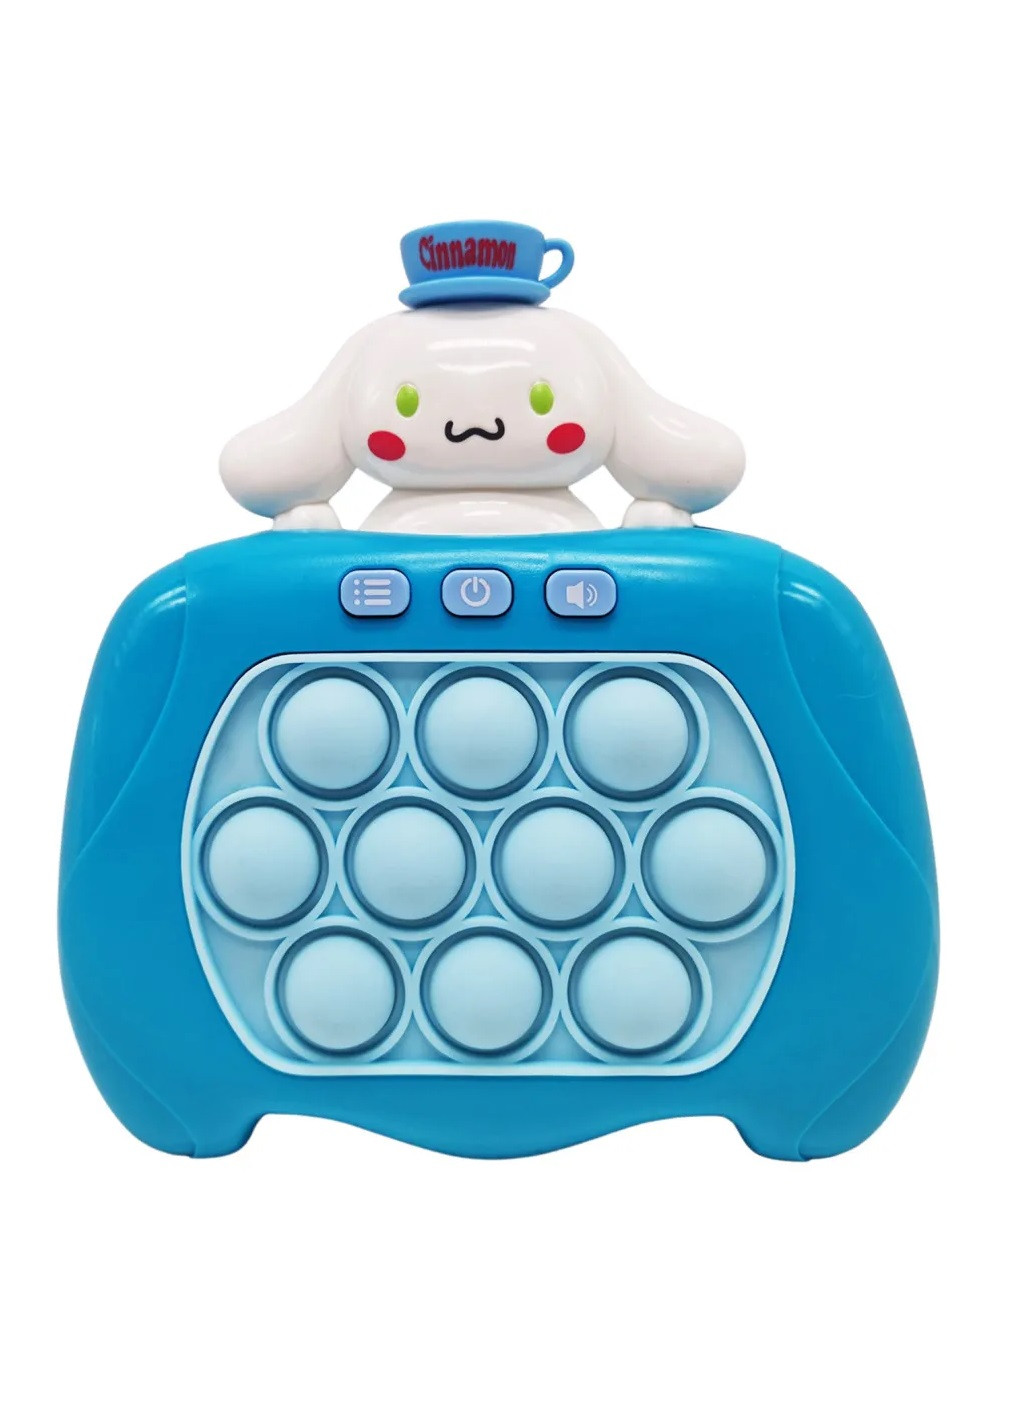 Электронная игрушка антистресс консоль головоломка для детей малышей с пузырьками на батарейках (476247-Prob) Синнаморолл синий Unbranded (277978167)